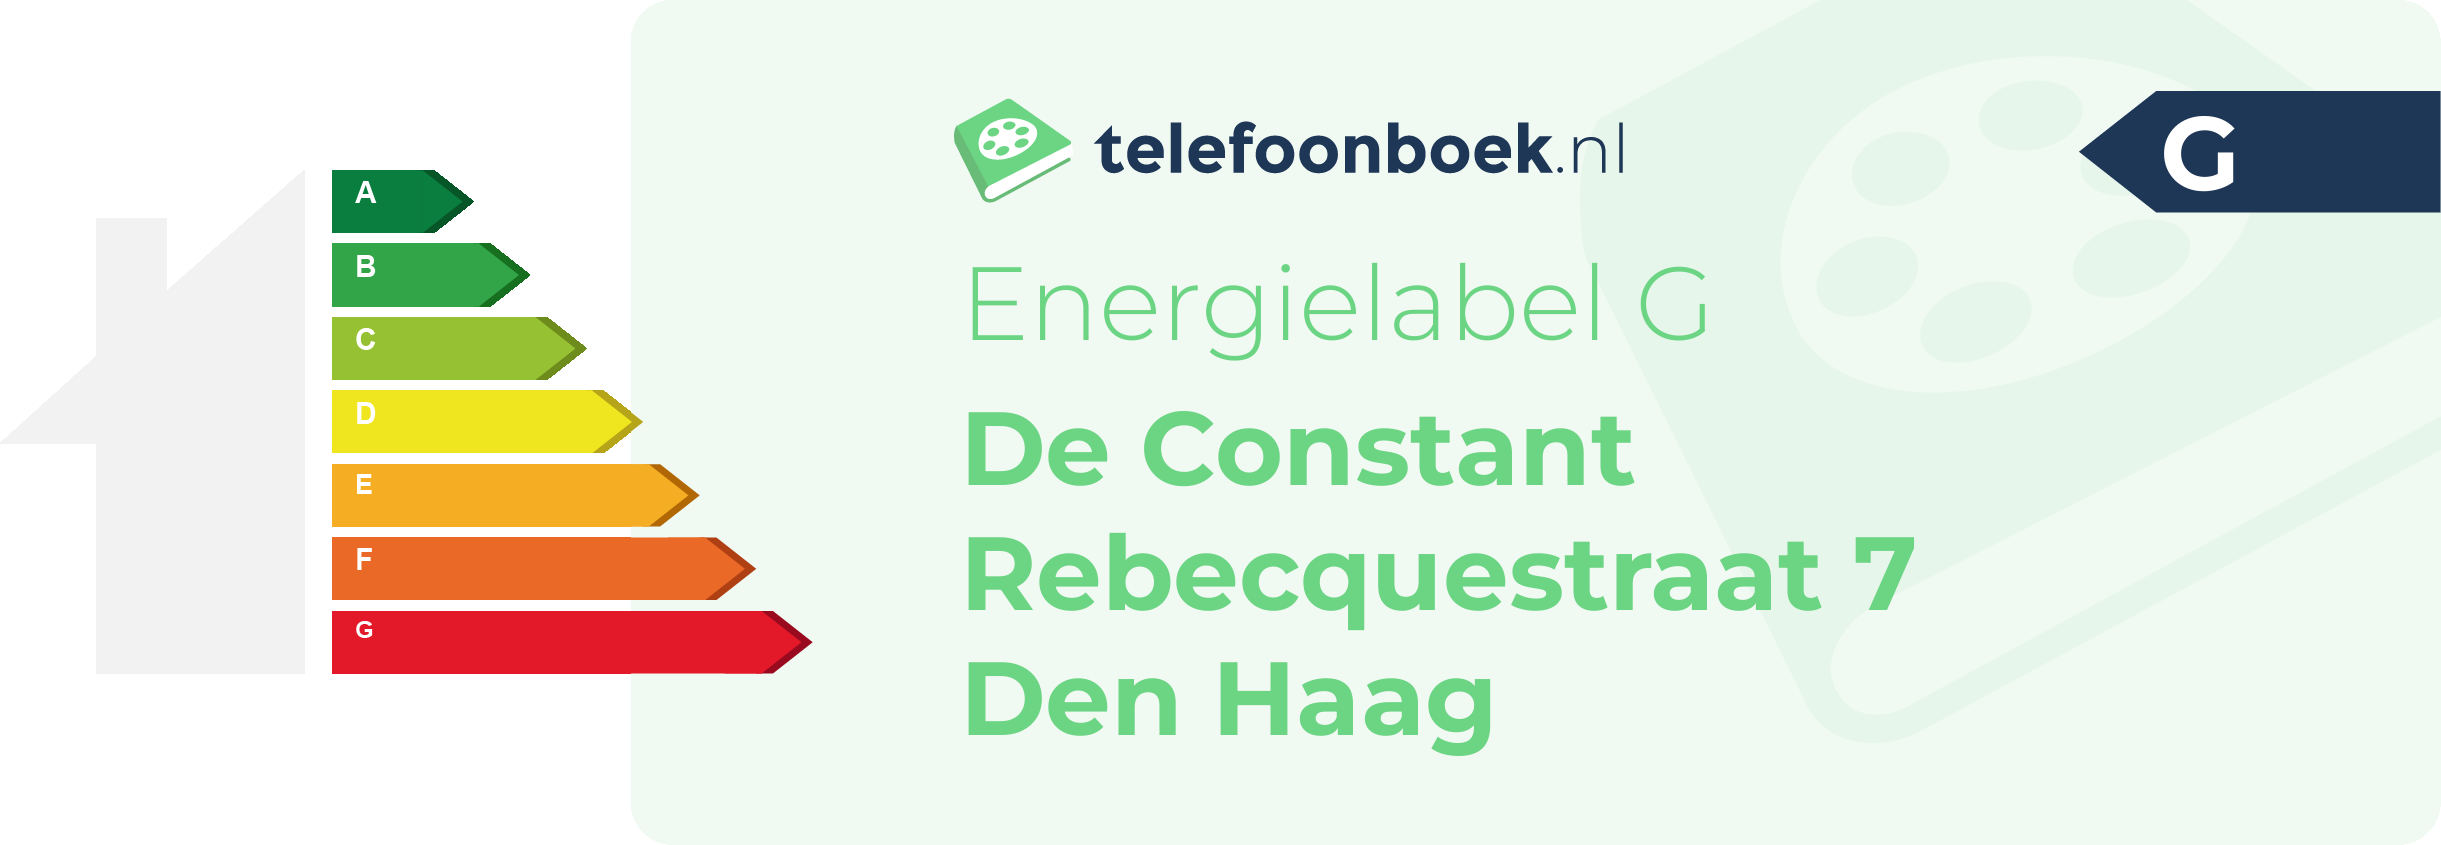 Energielabel De Constant Rebecquestraat 7 Den Haag